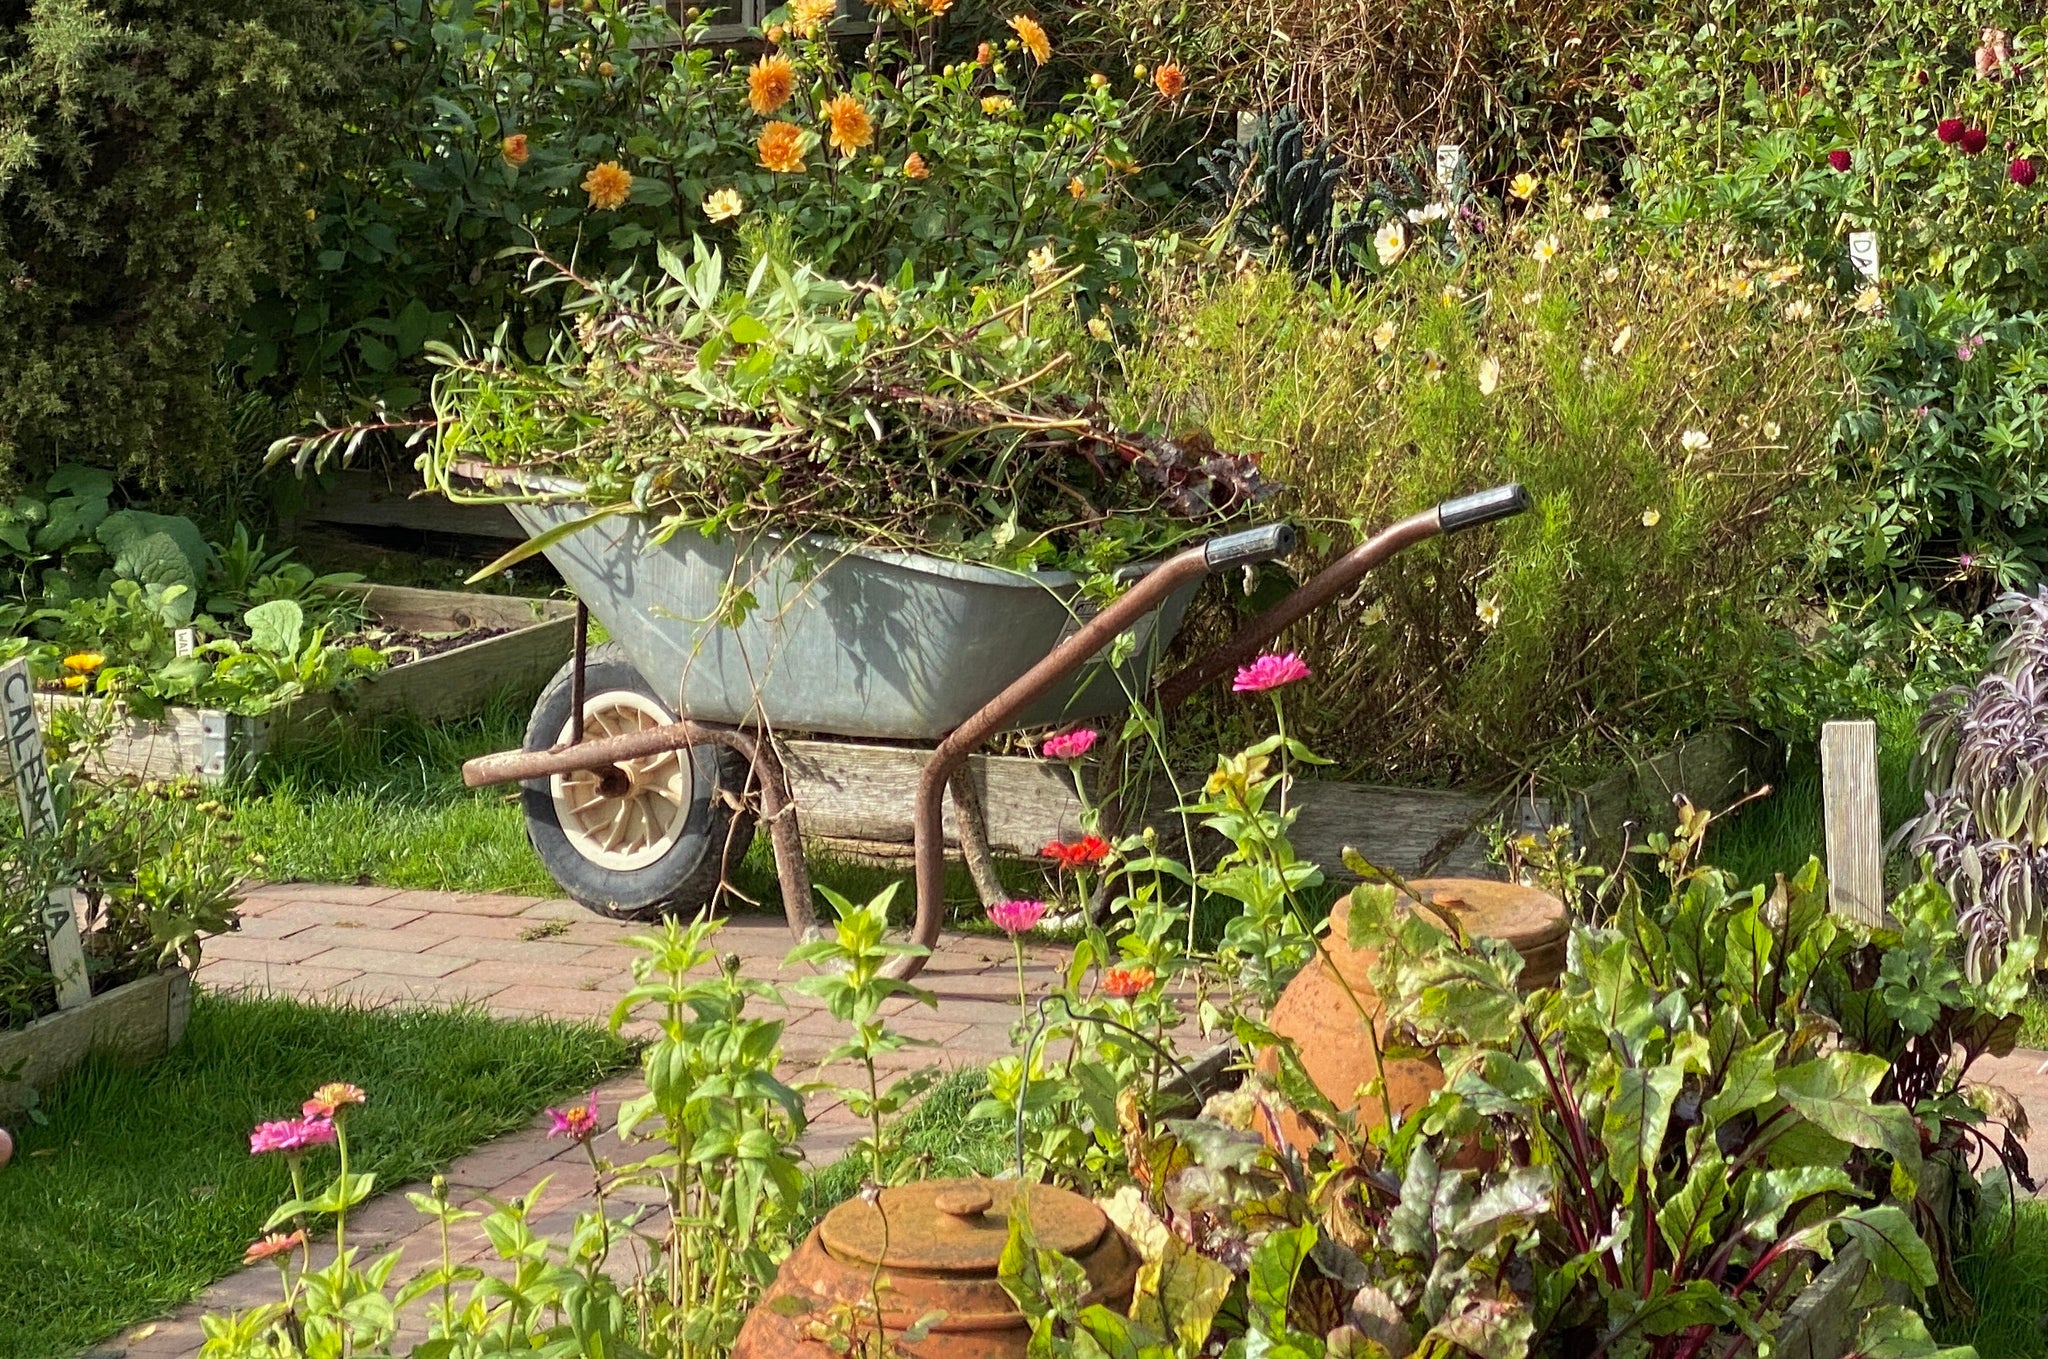 Wheelbarrow in kitchen garden